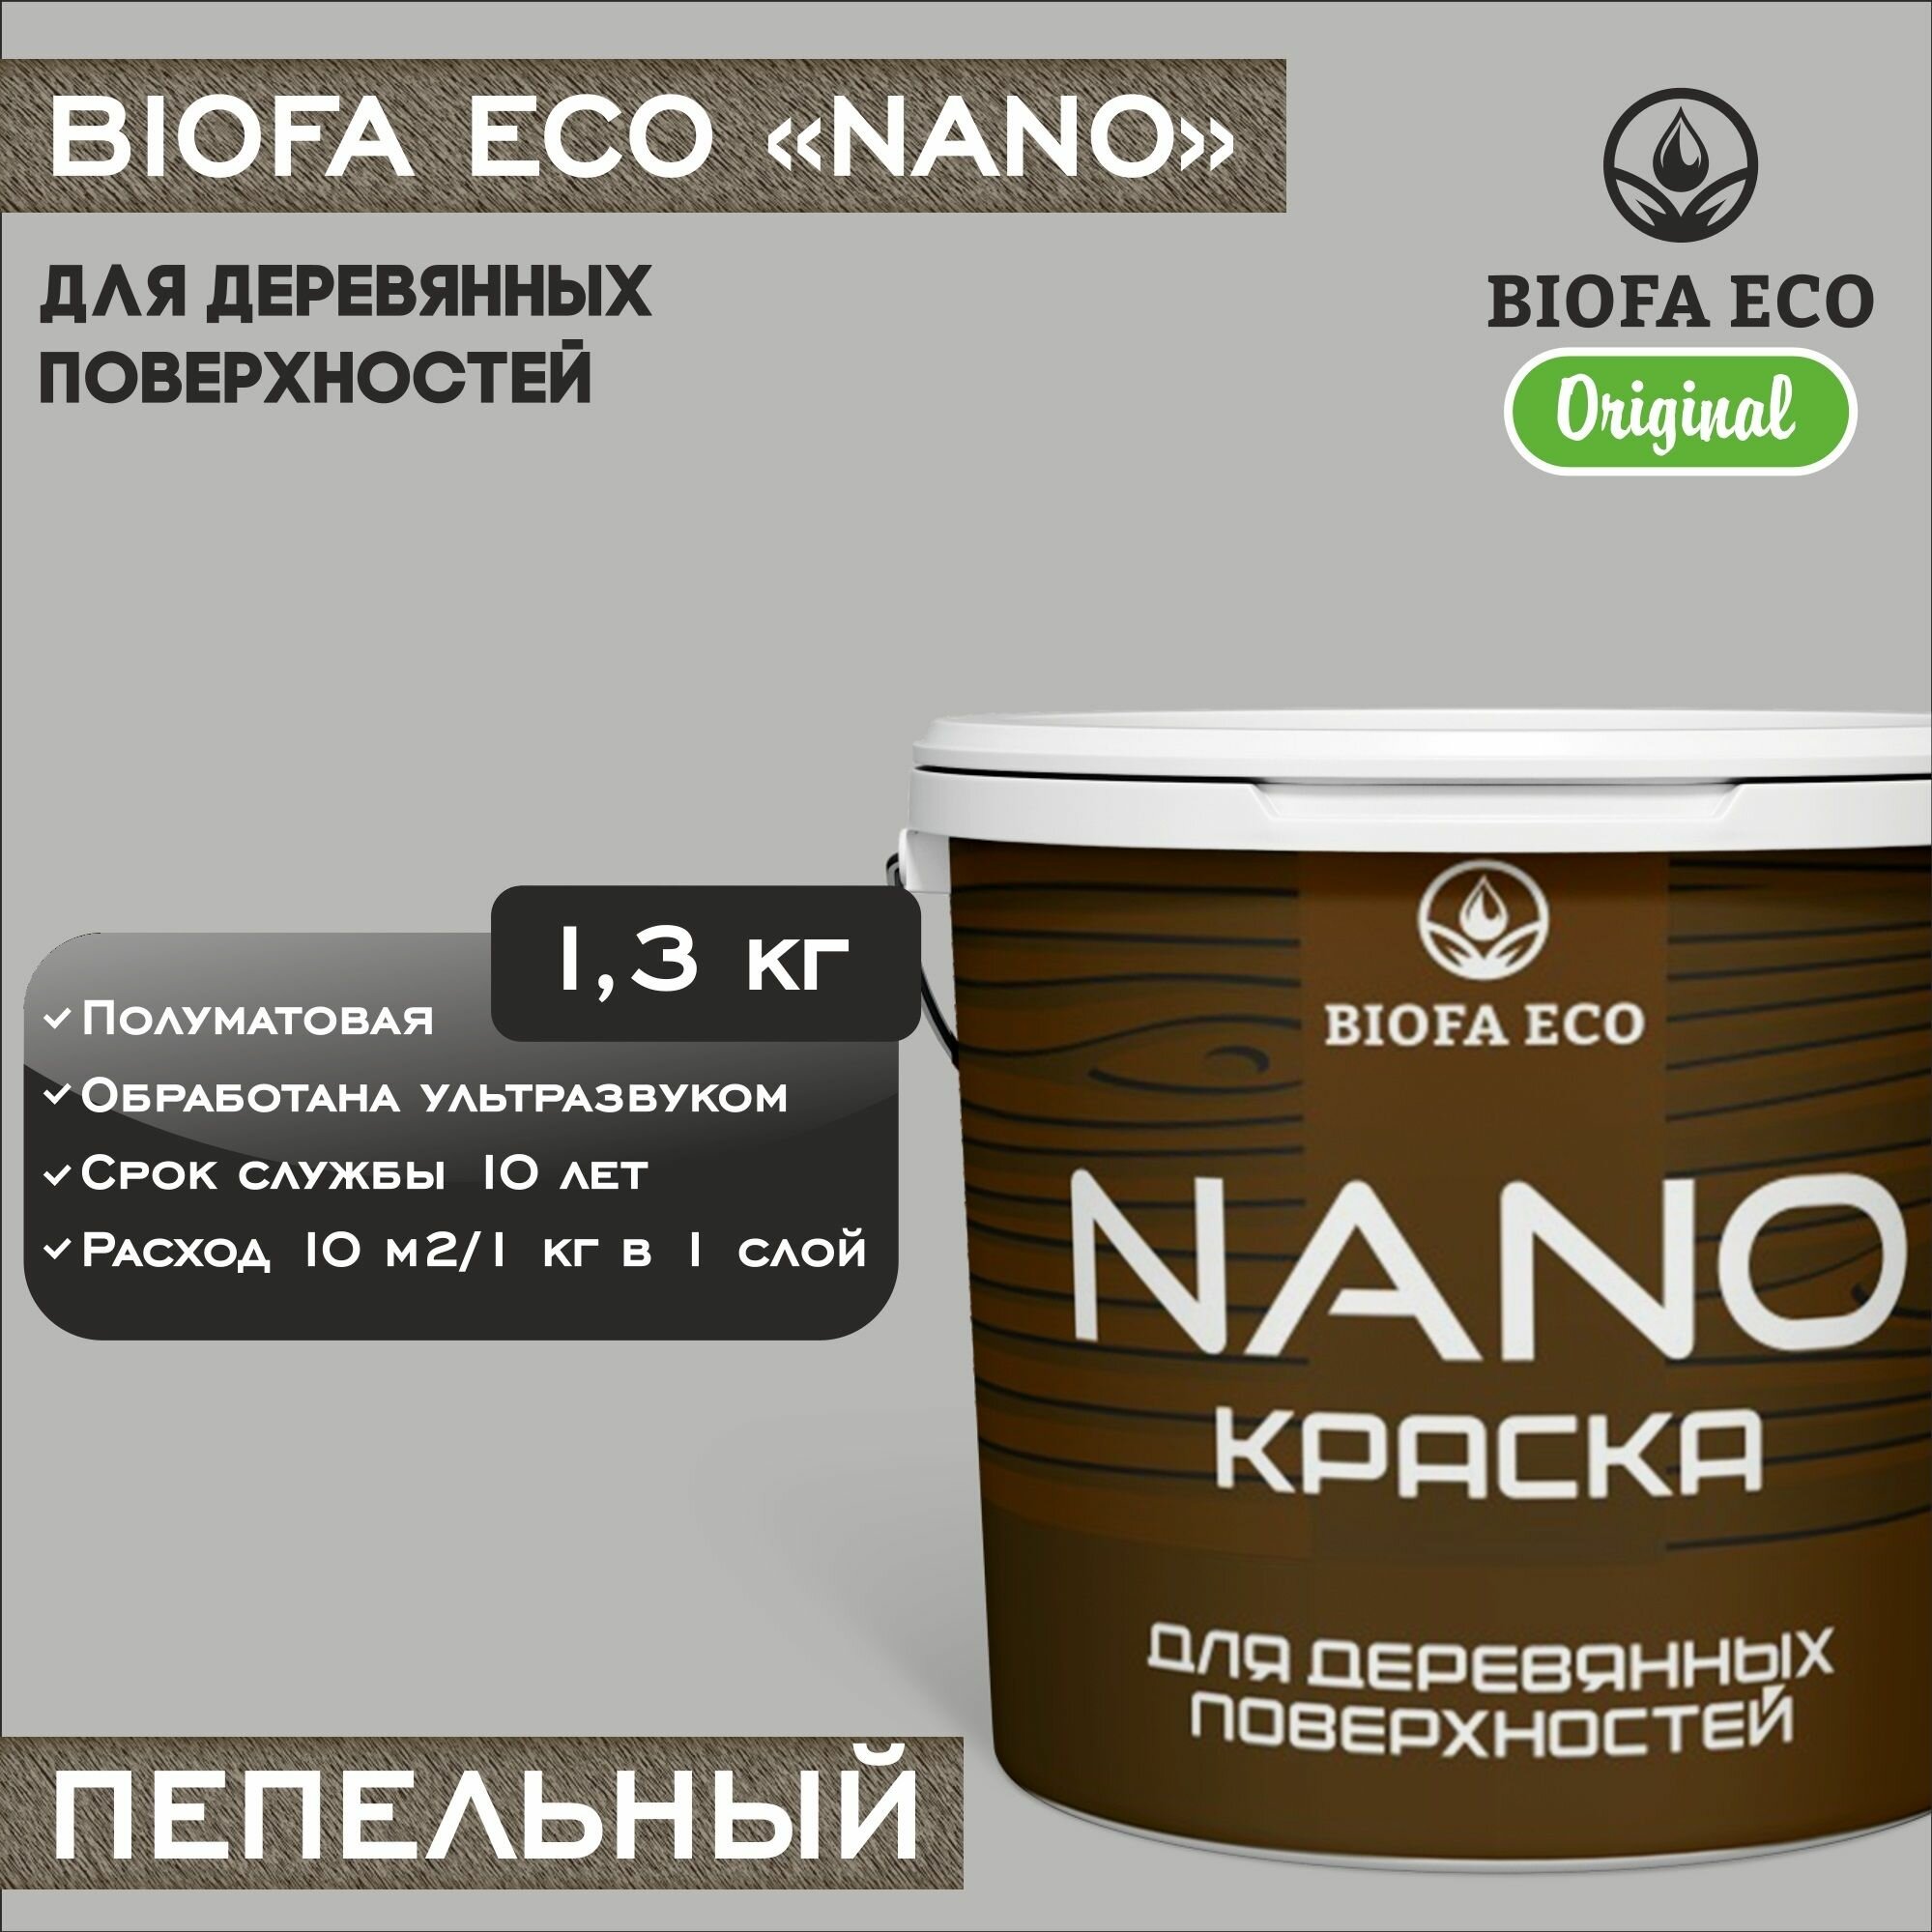 Краска BIOFA ECO NANO для деревянных поверхностей, укривистая, полуматовая, цвет пепельный, 1,3 кг